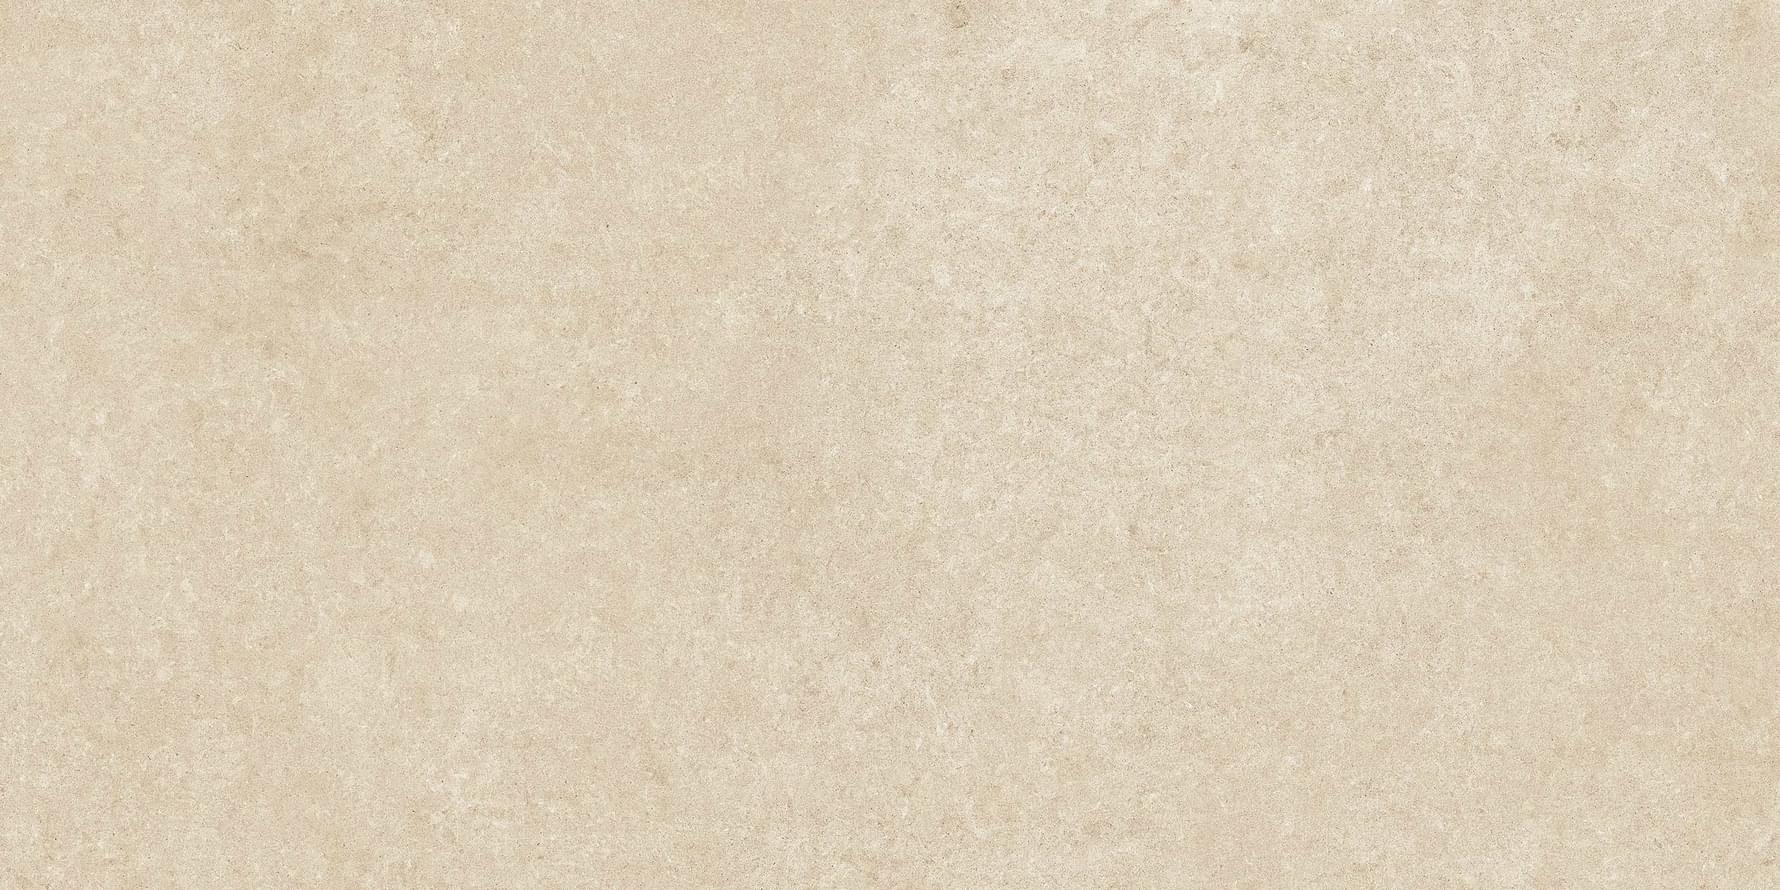 Cerim Elemental Stone Cream Sandstone Lucido 30x60